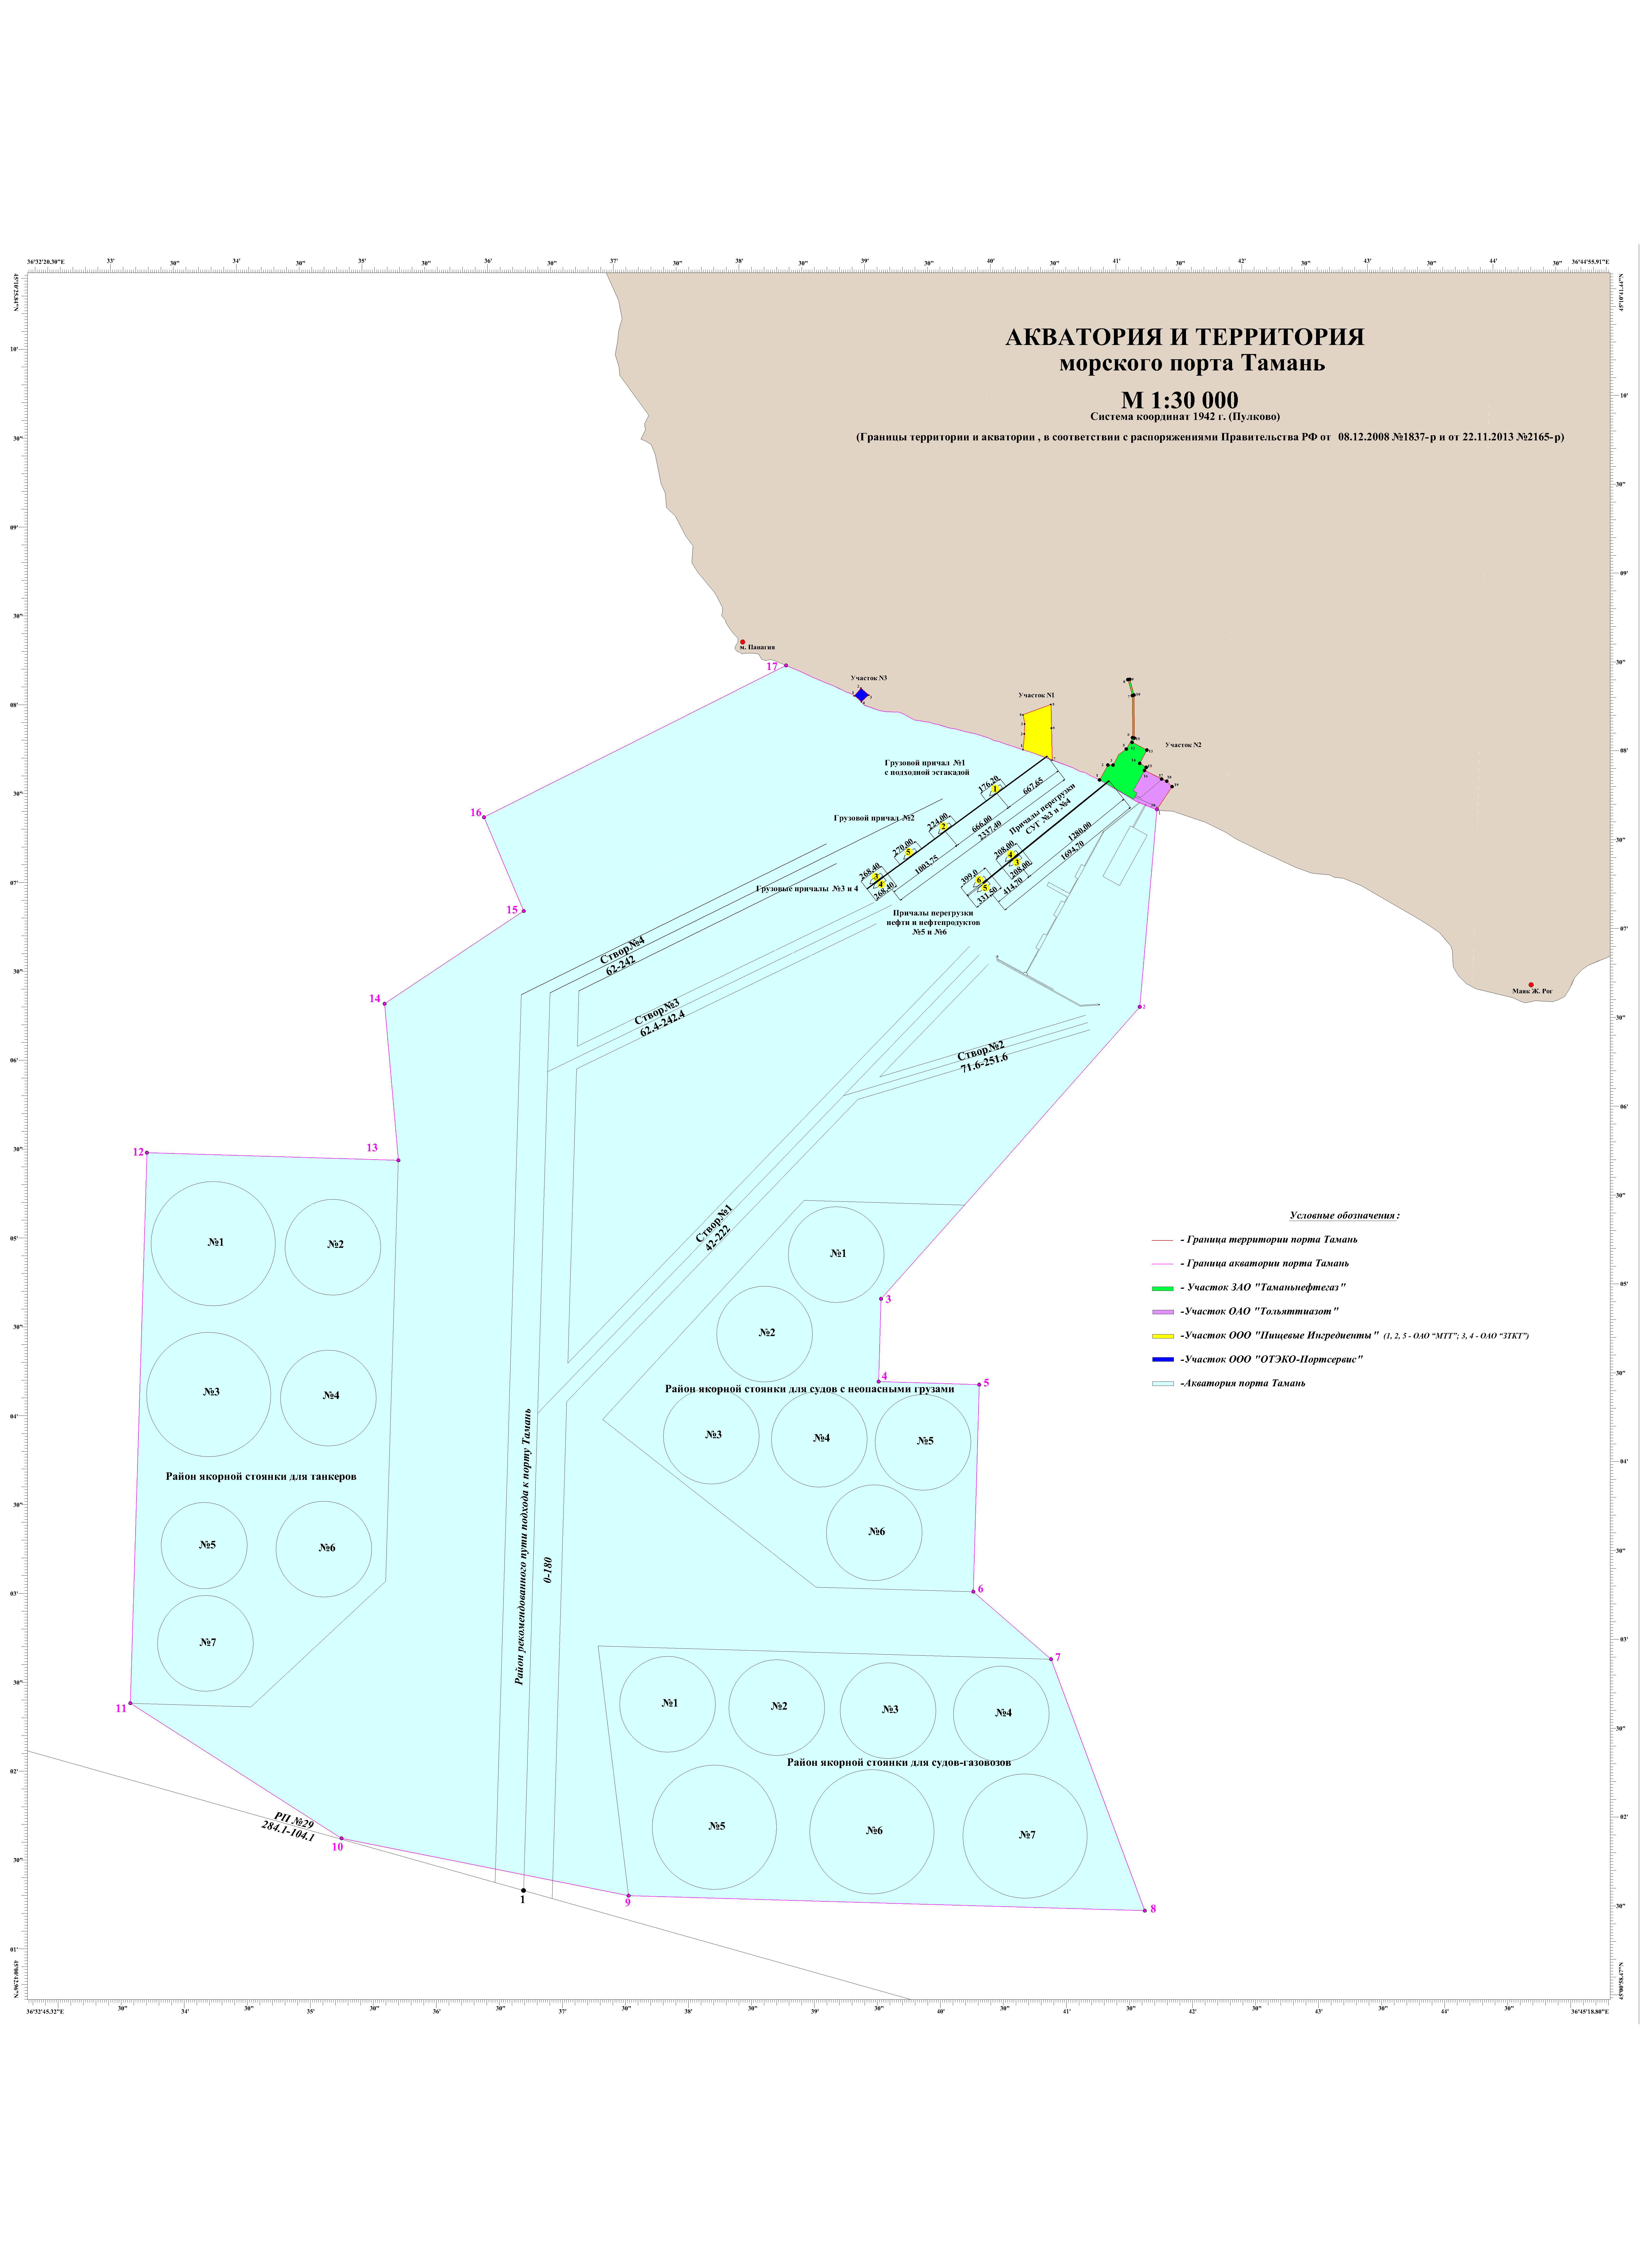 Разработка Плана по предупреждению и ликвидации разливов нефти и нефтепродуктов Филиала ФГБУ "Администрация морских портов Чёрного моря" в морском порту Тамань